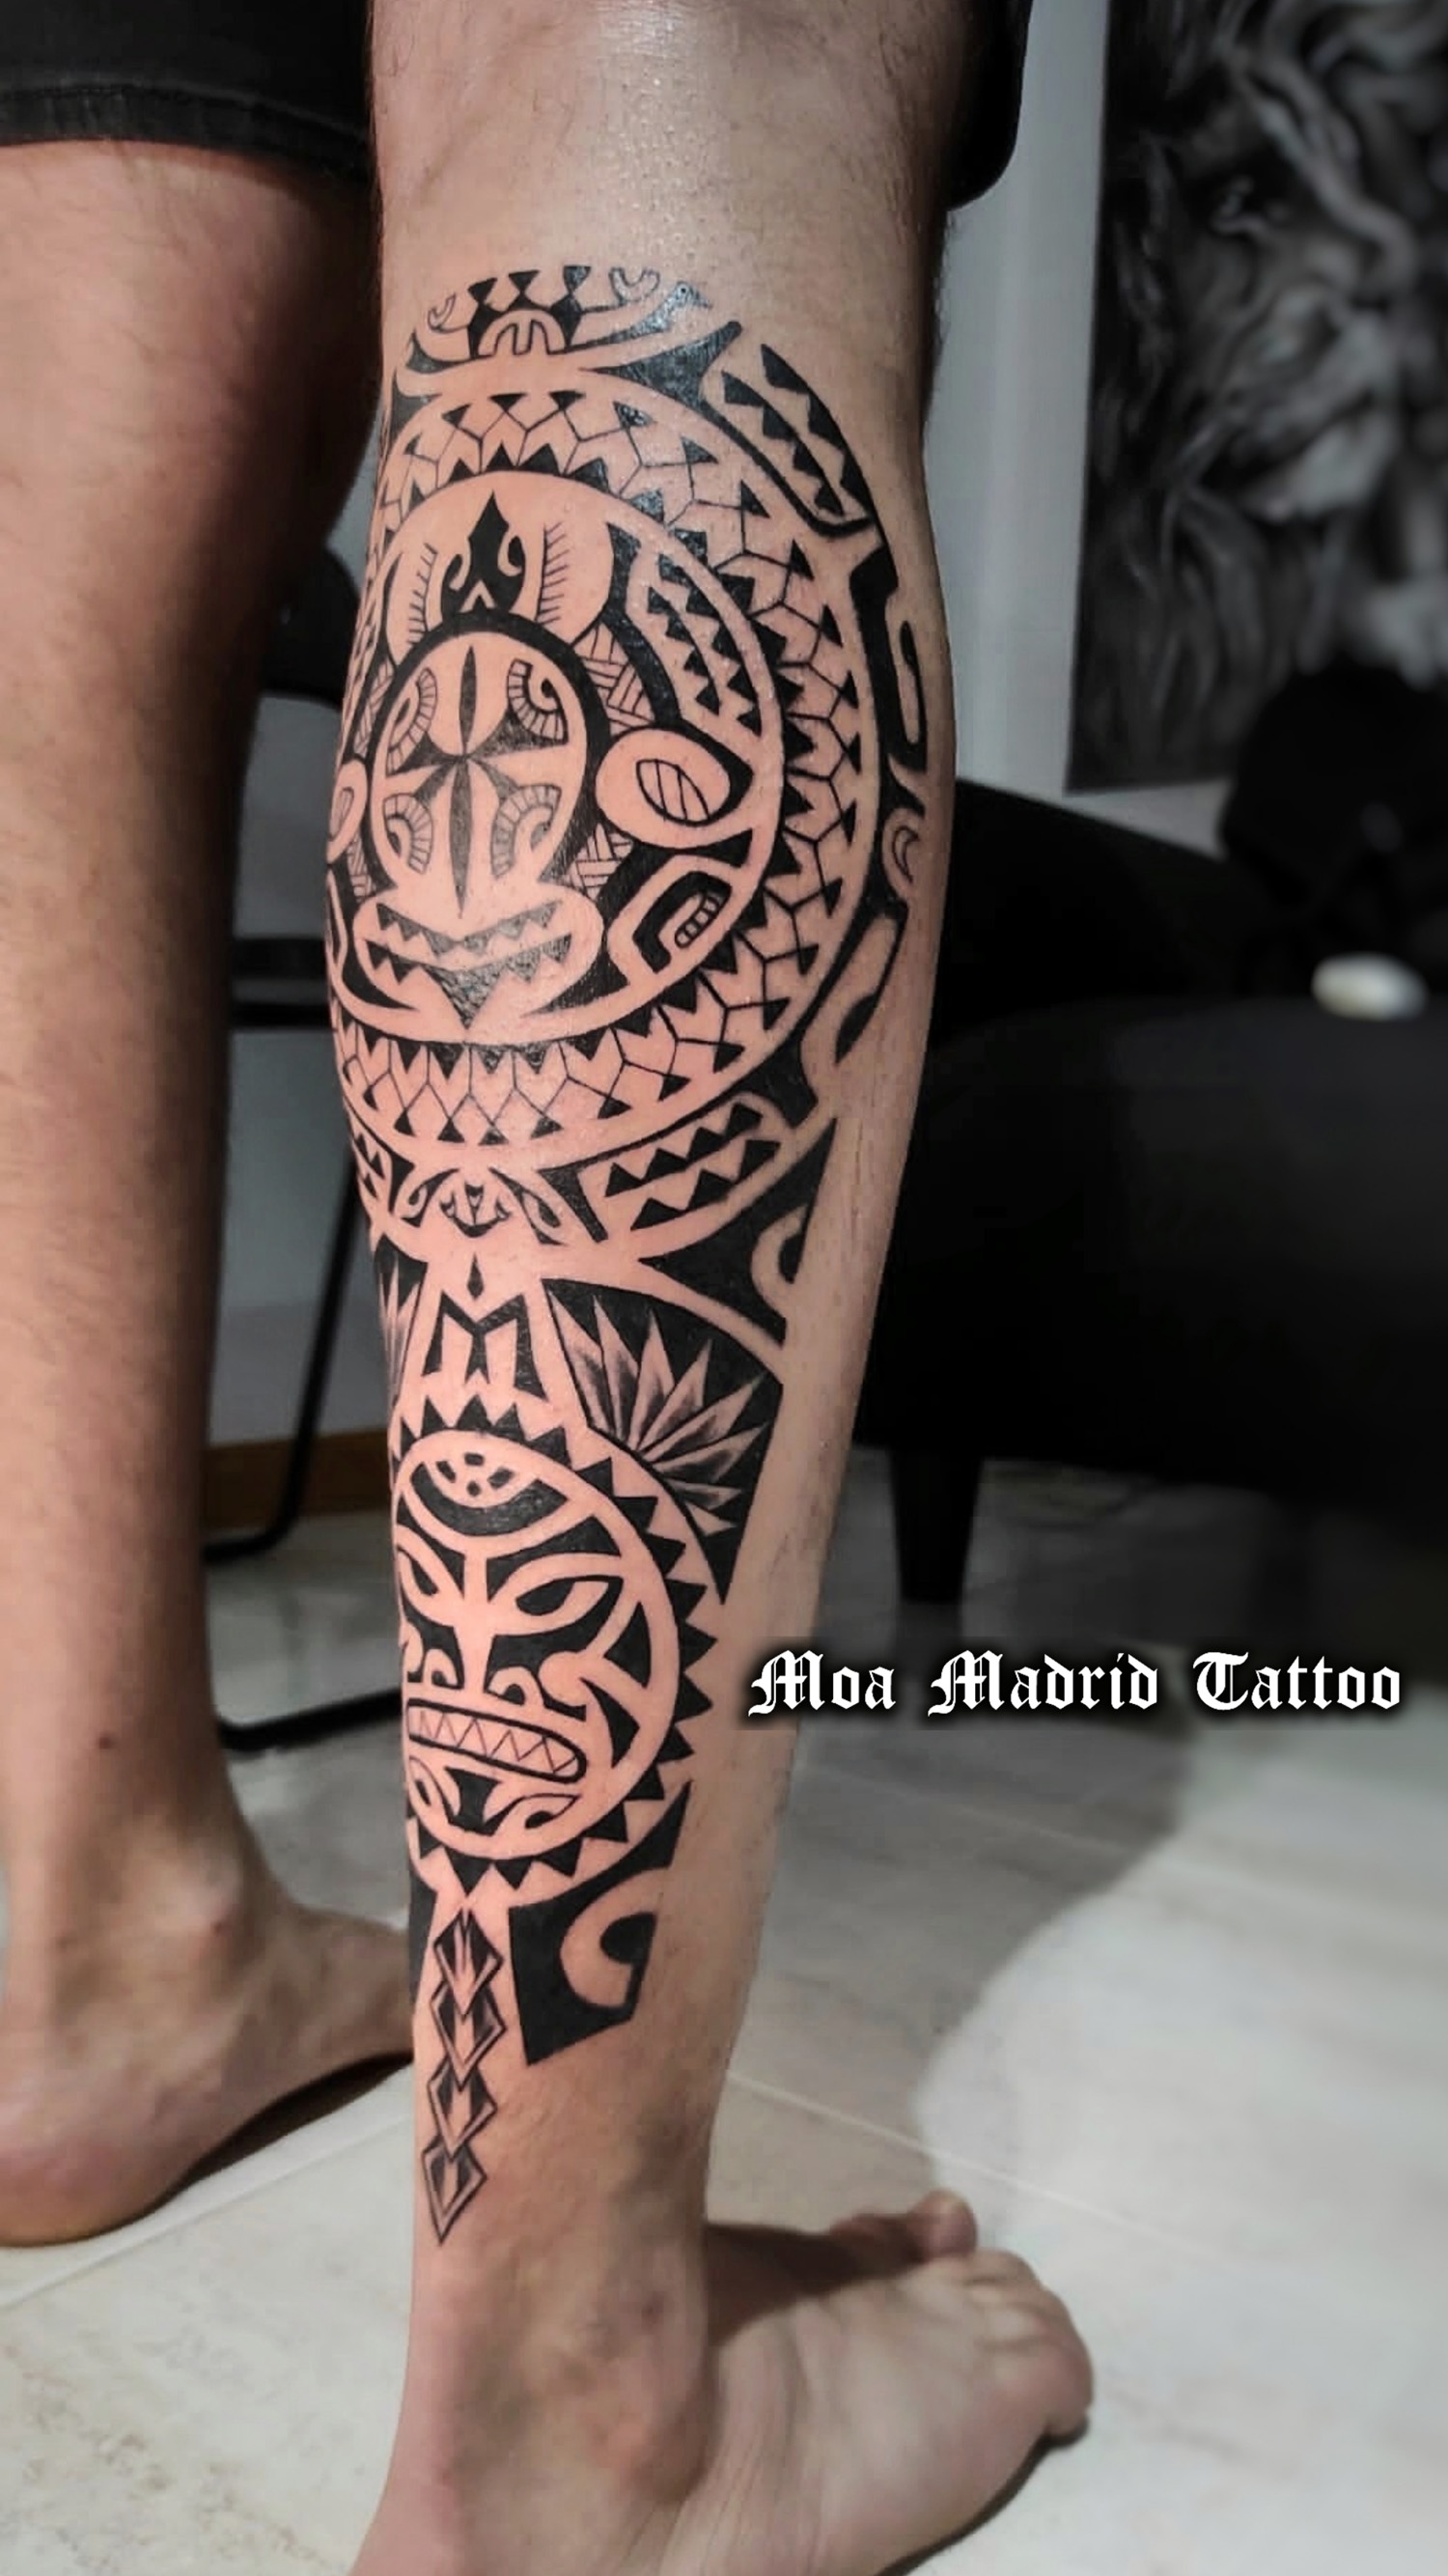 Tatuaje maorí en el gemelo, vista del lado derecho